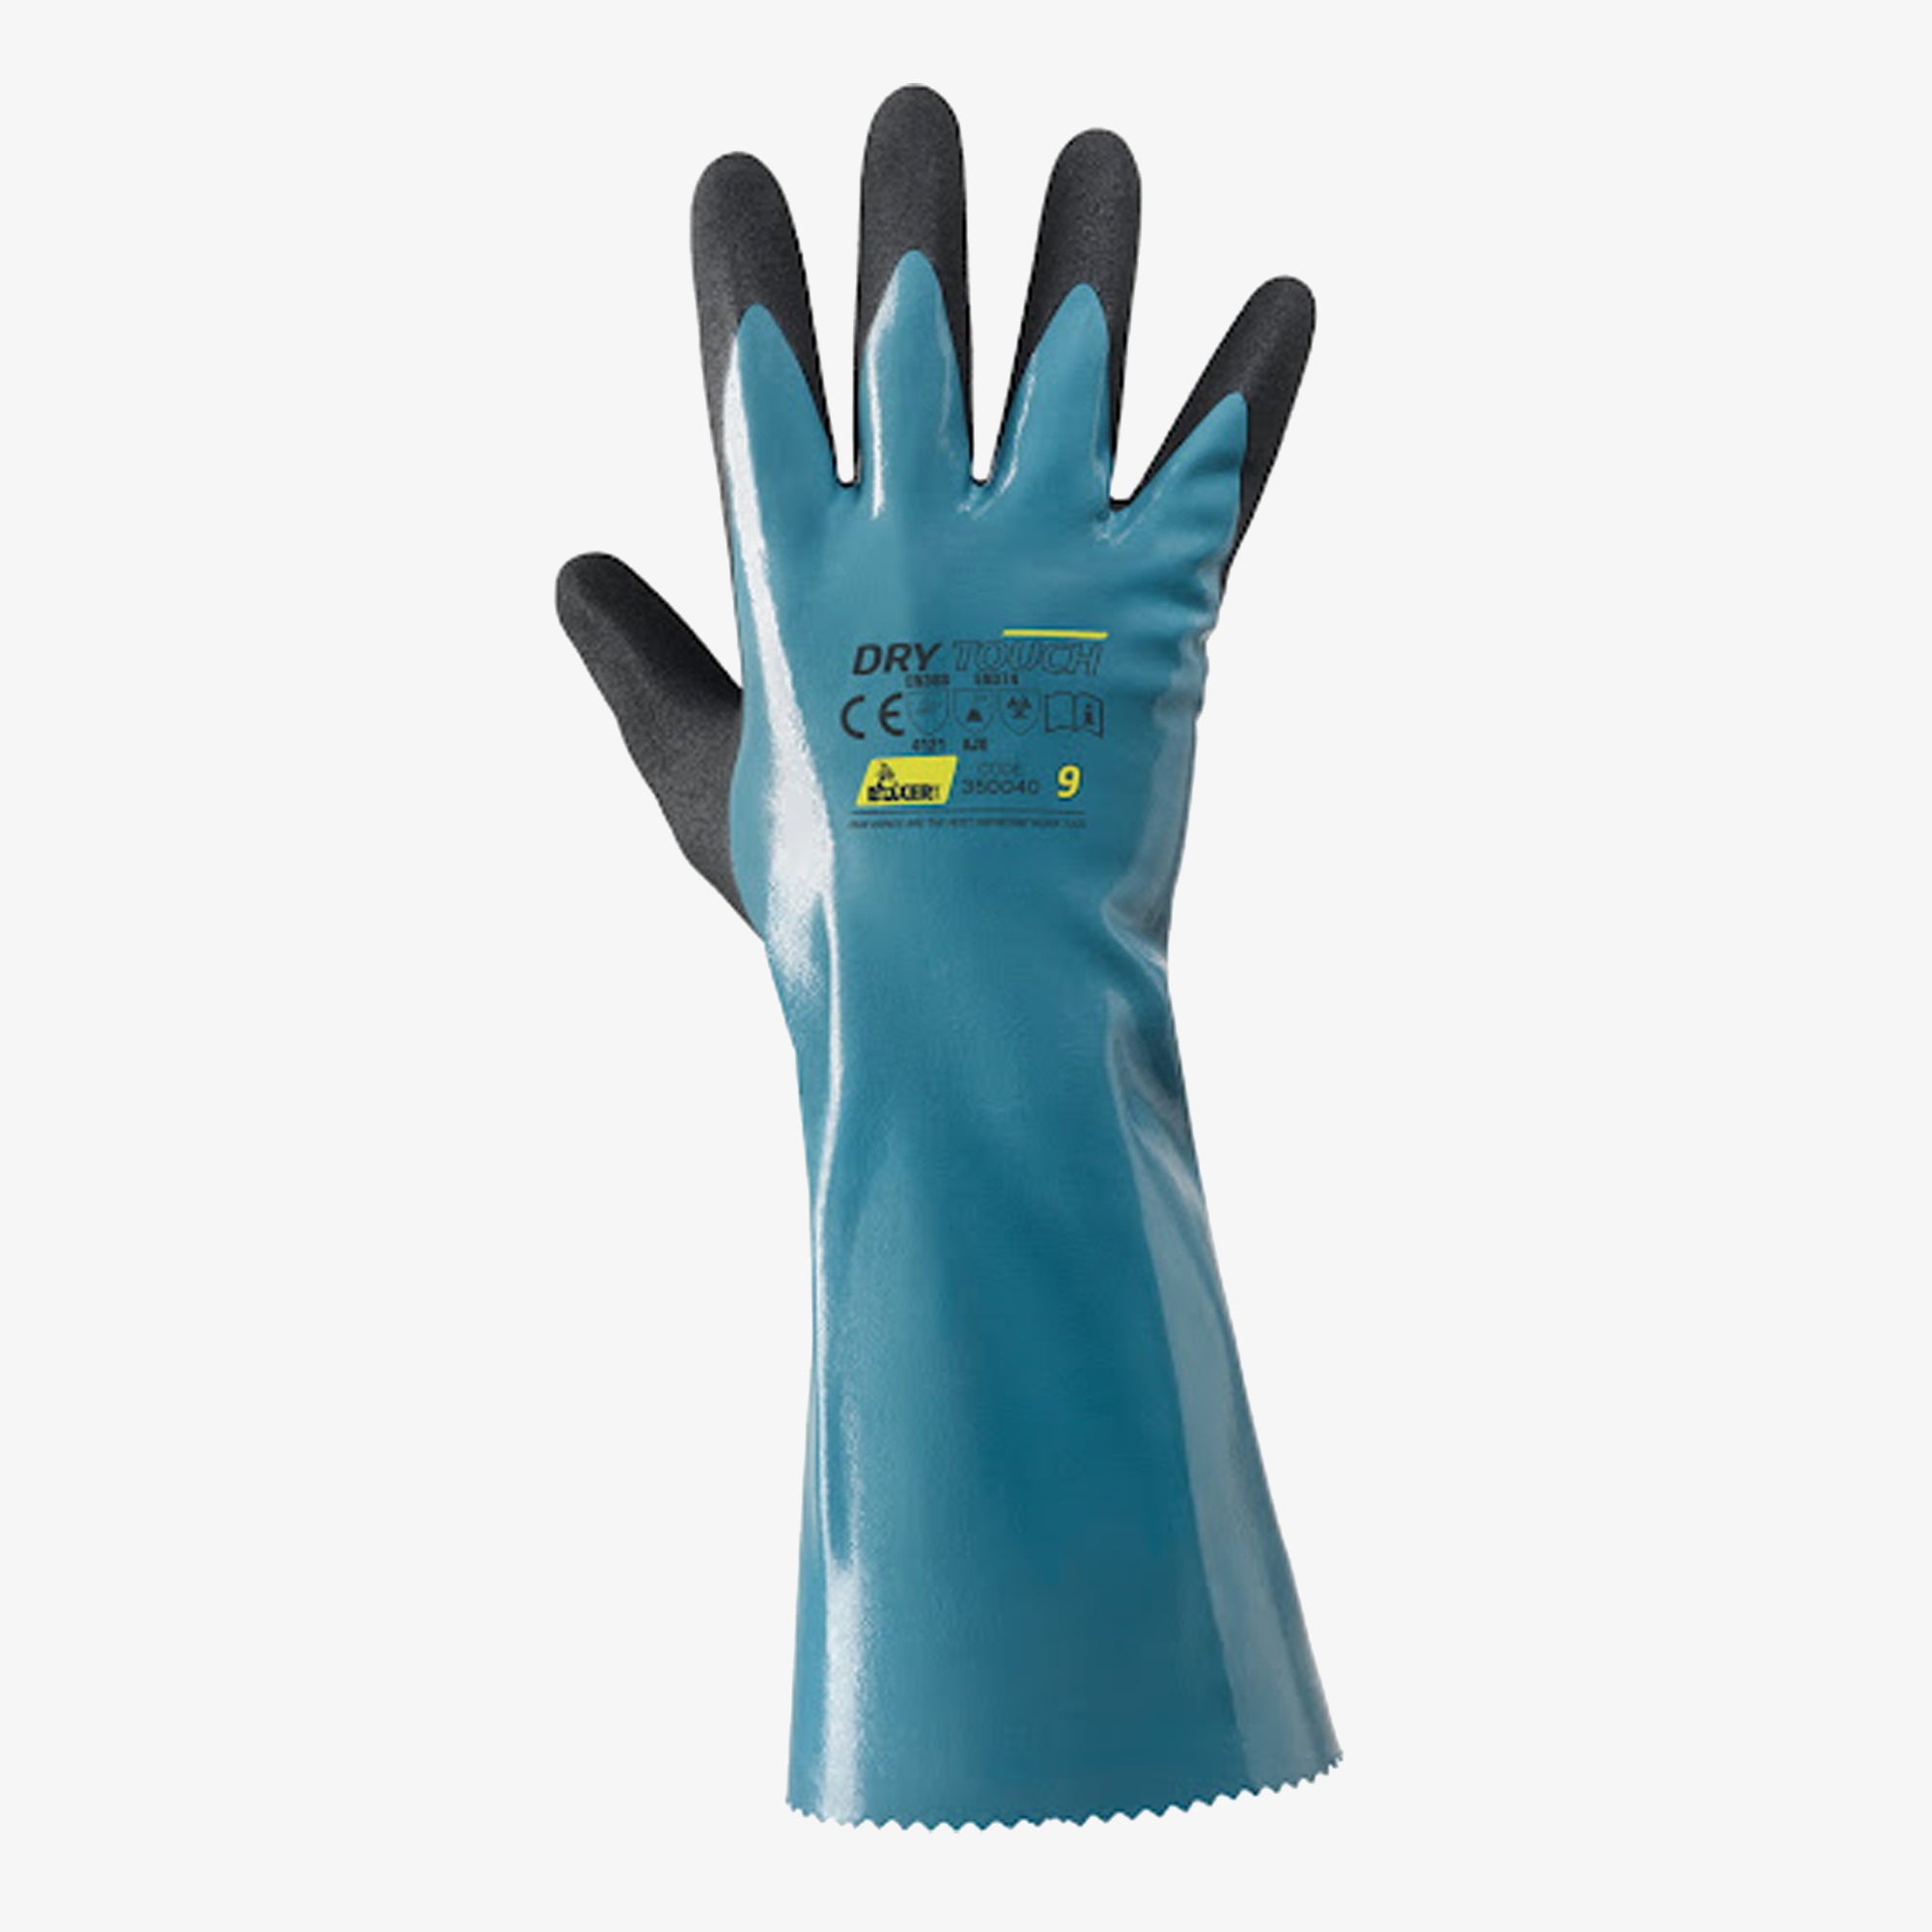 NERI Dry touch Nitrilne kemijske rukavice